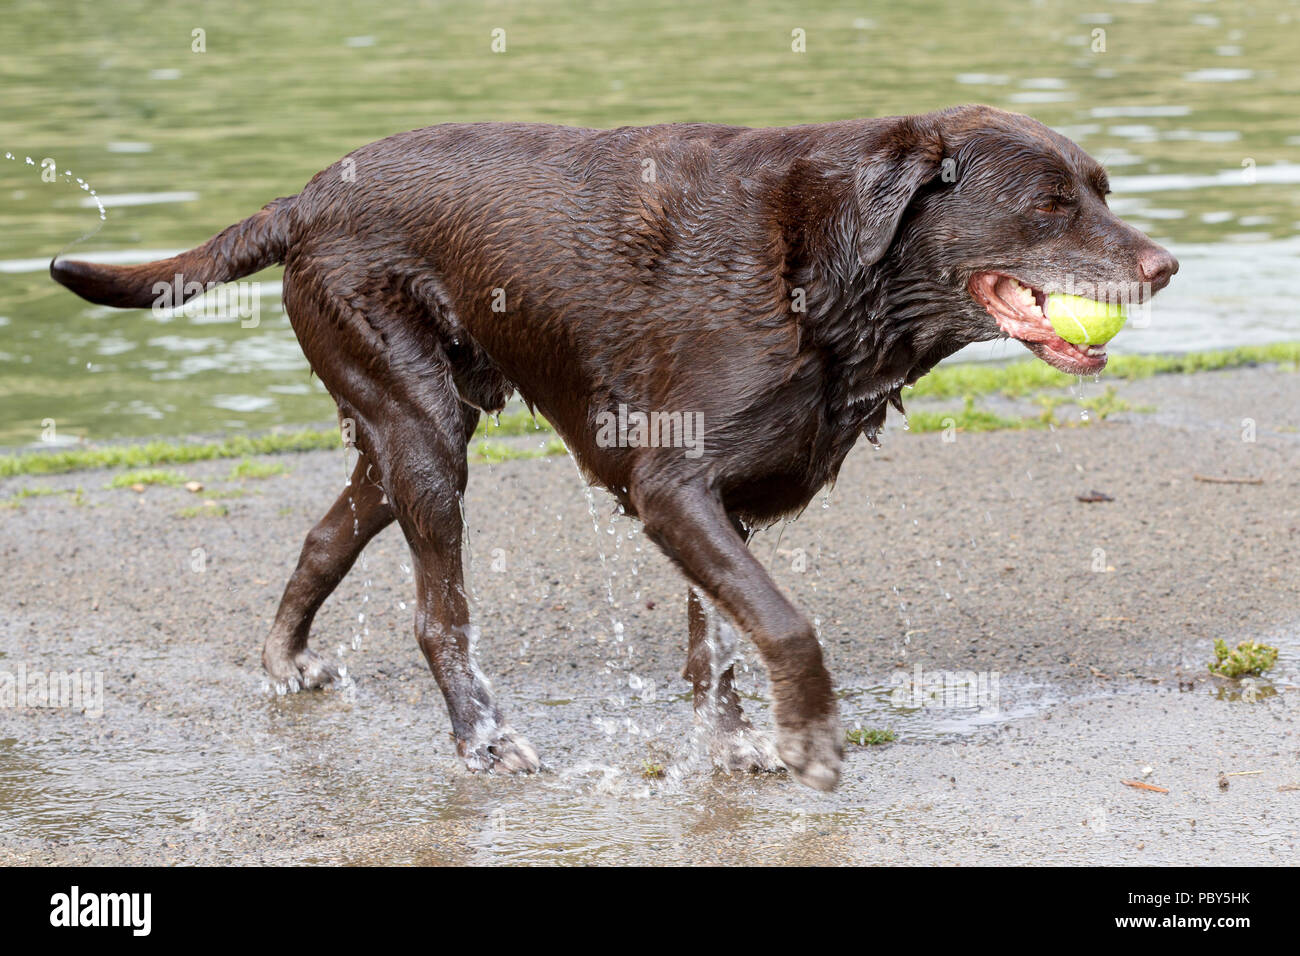 Il raffreddamento dopo la passeggiata mattutina per il cane in barca il lago in Abington Park, Northampton su una calda mattina di luglio. Foto Stock